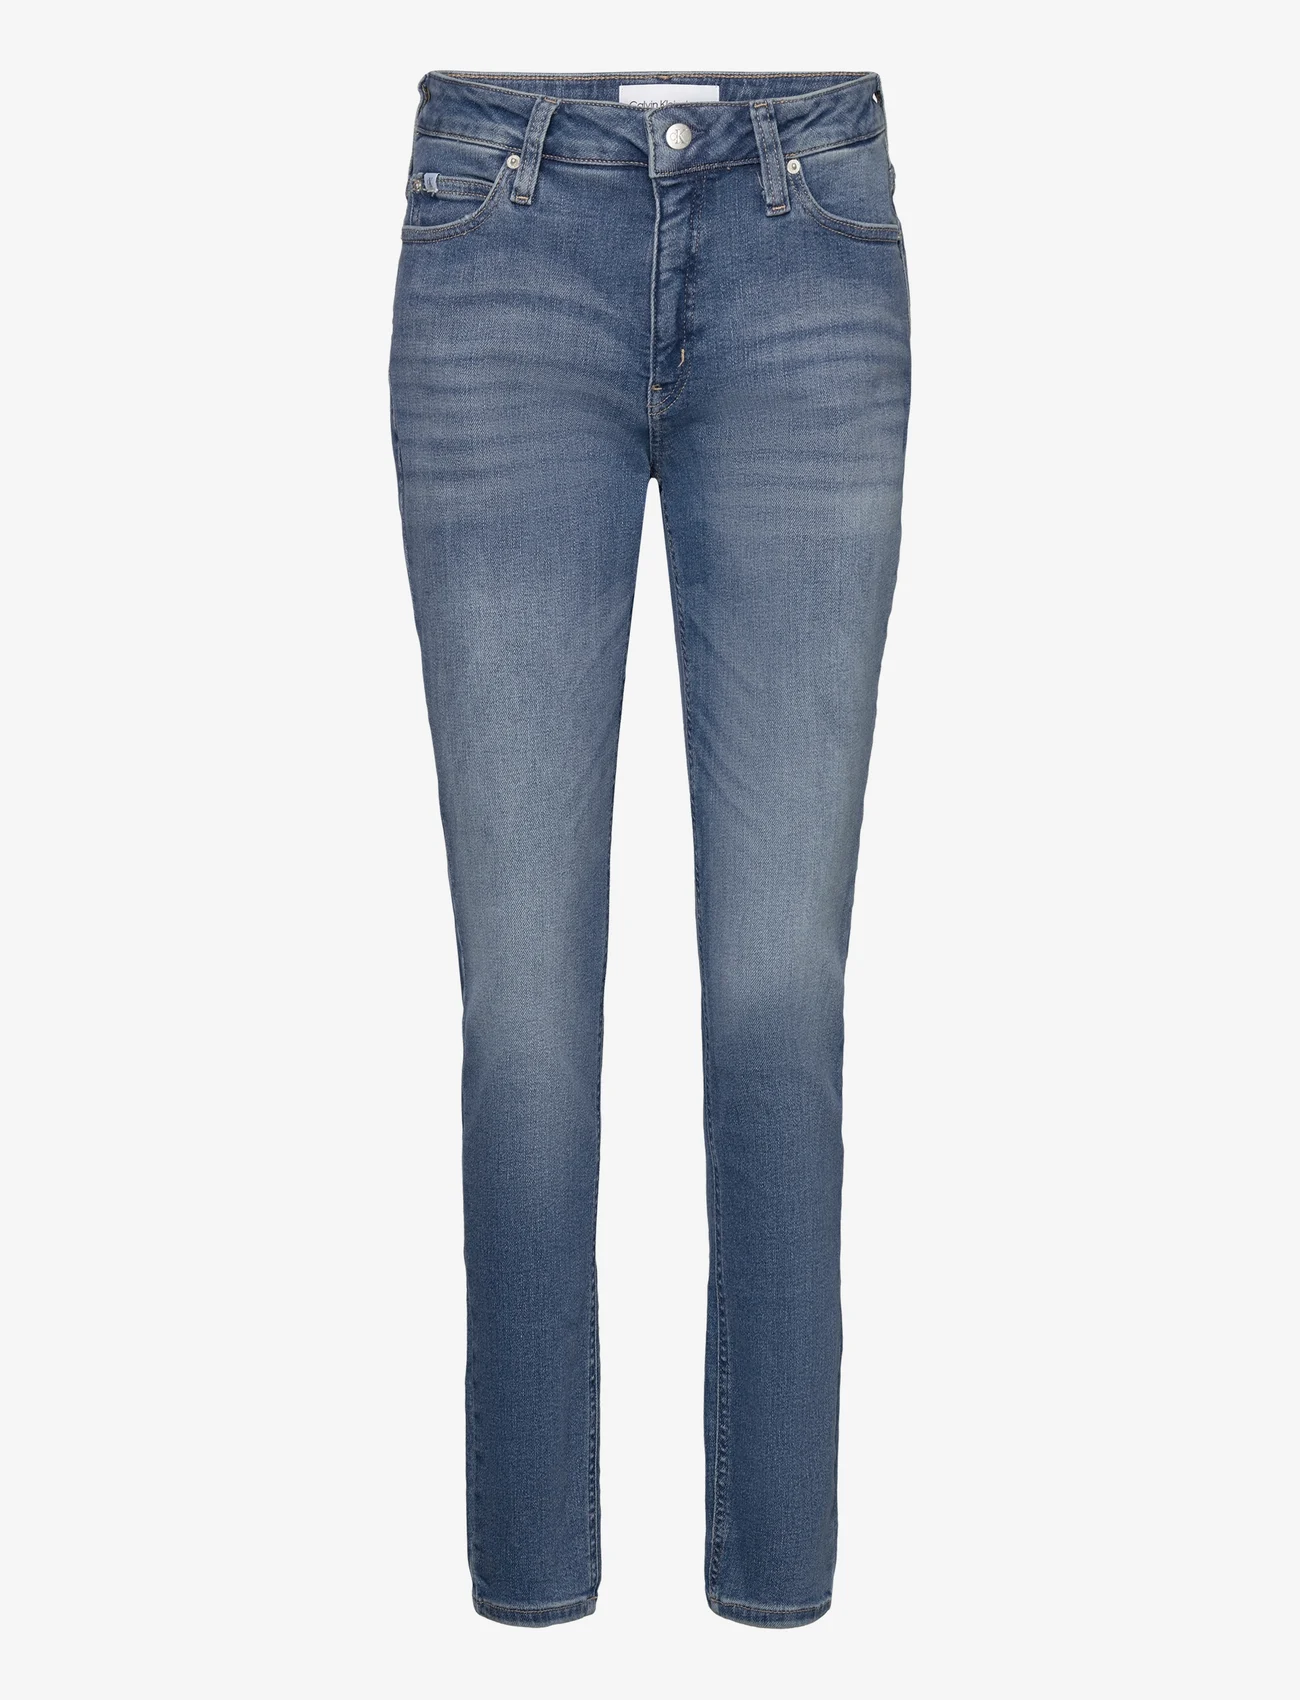 Calvin Klein Jeans - MID RISE SKINNY - liibuvad teksad - denim medium - 0